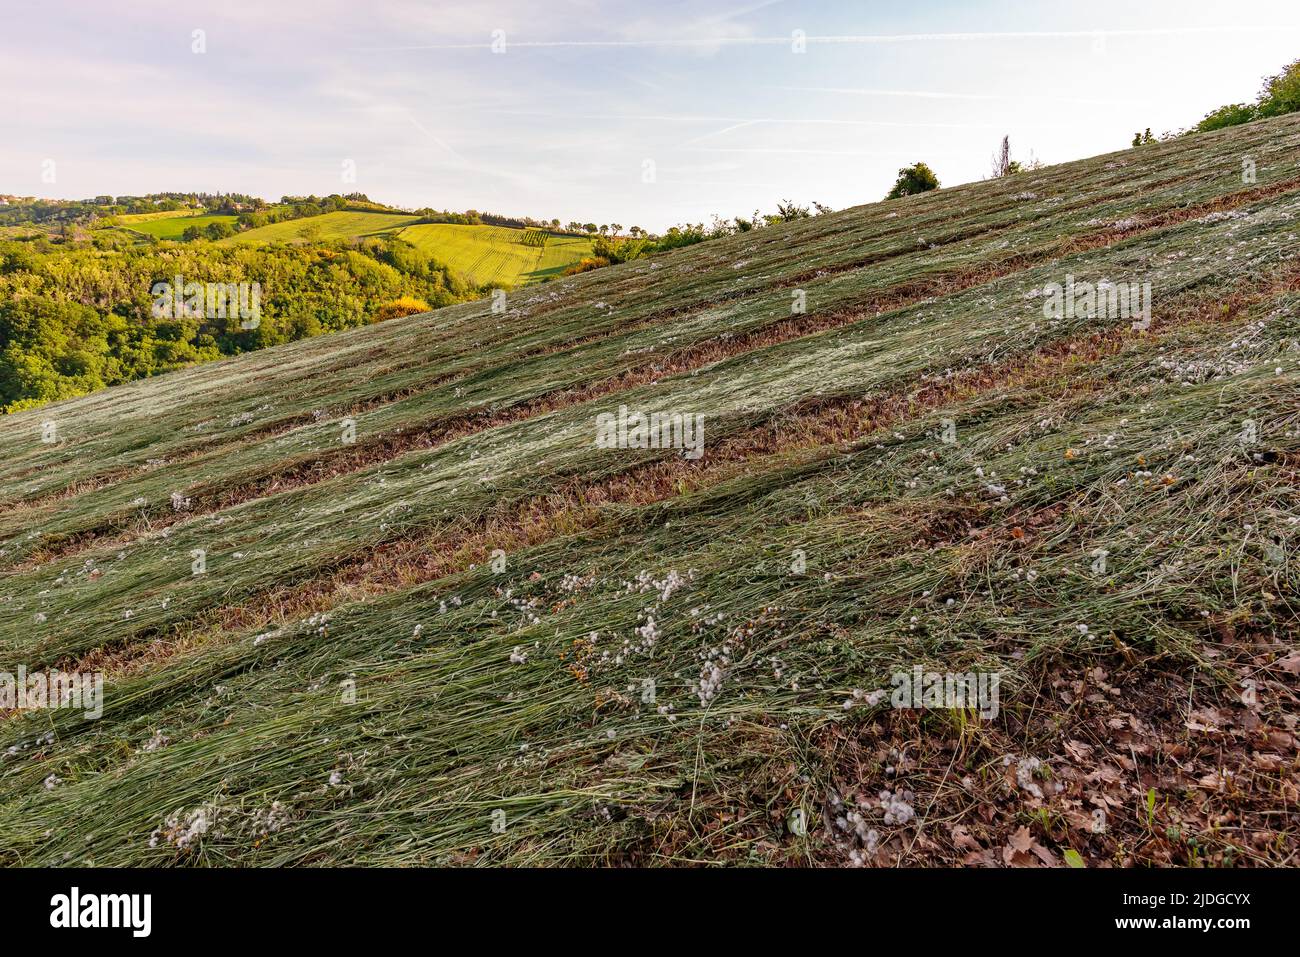 Vista sui campi e gli alberi nei pressi di Belvedere Fogliense nelle Marche, al mattino quando sorge il sole. Foto Stock